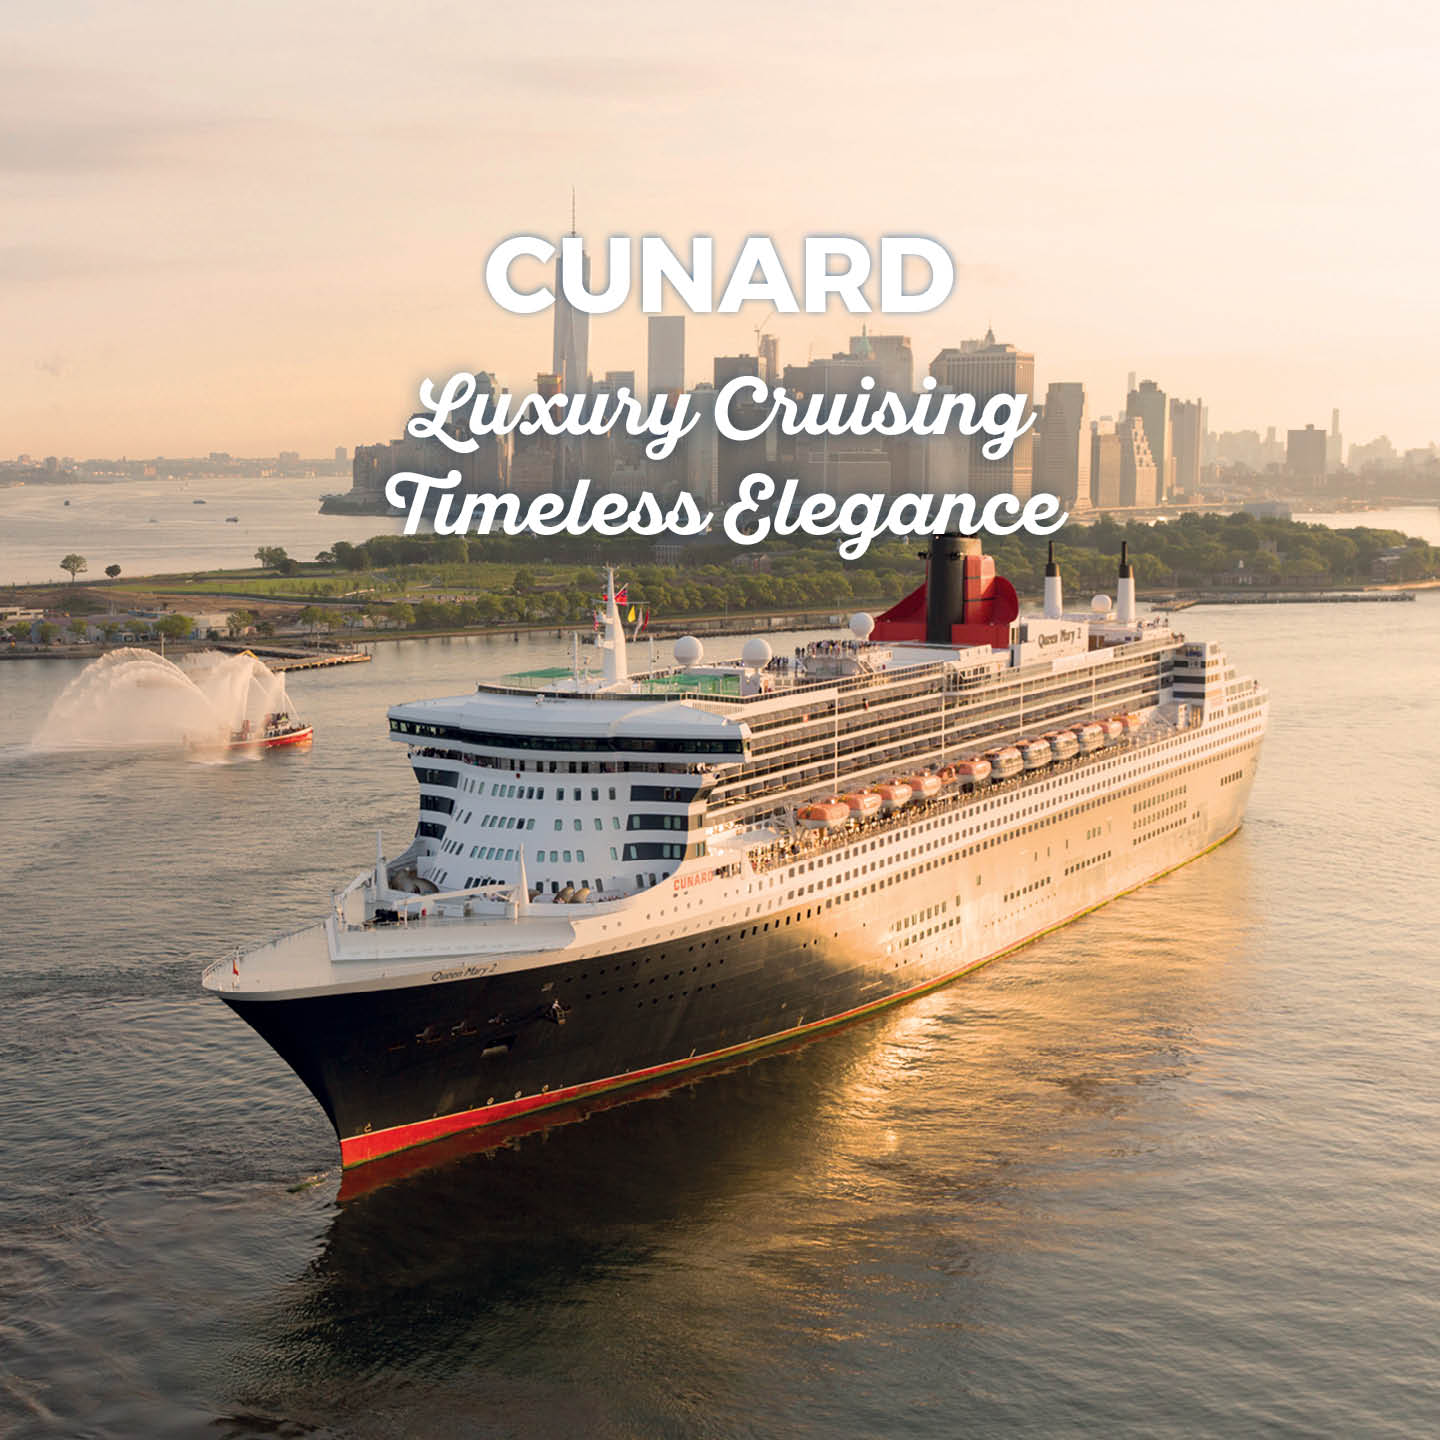 cunard 5 day cruises